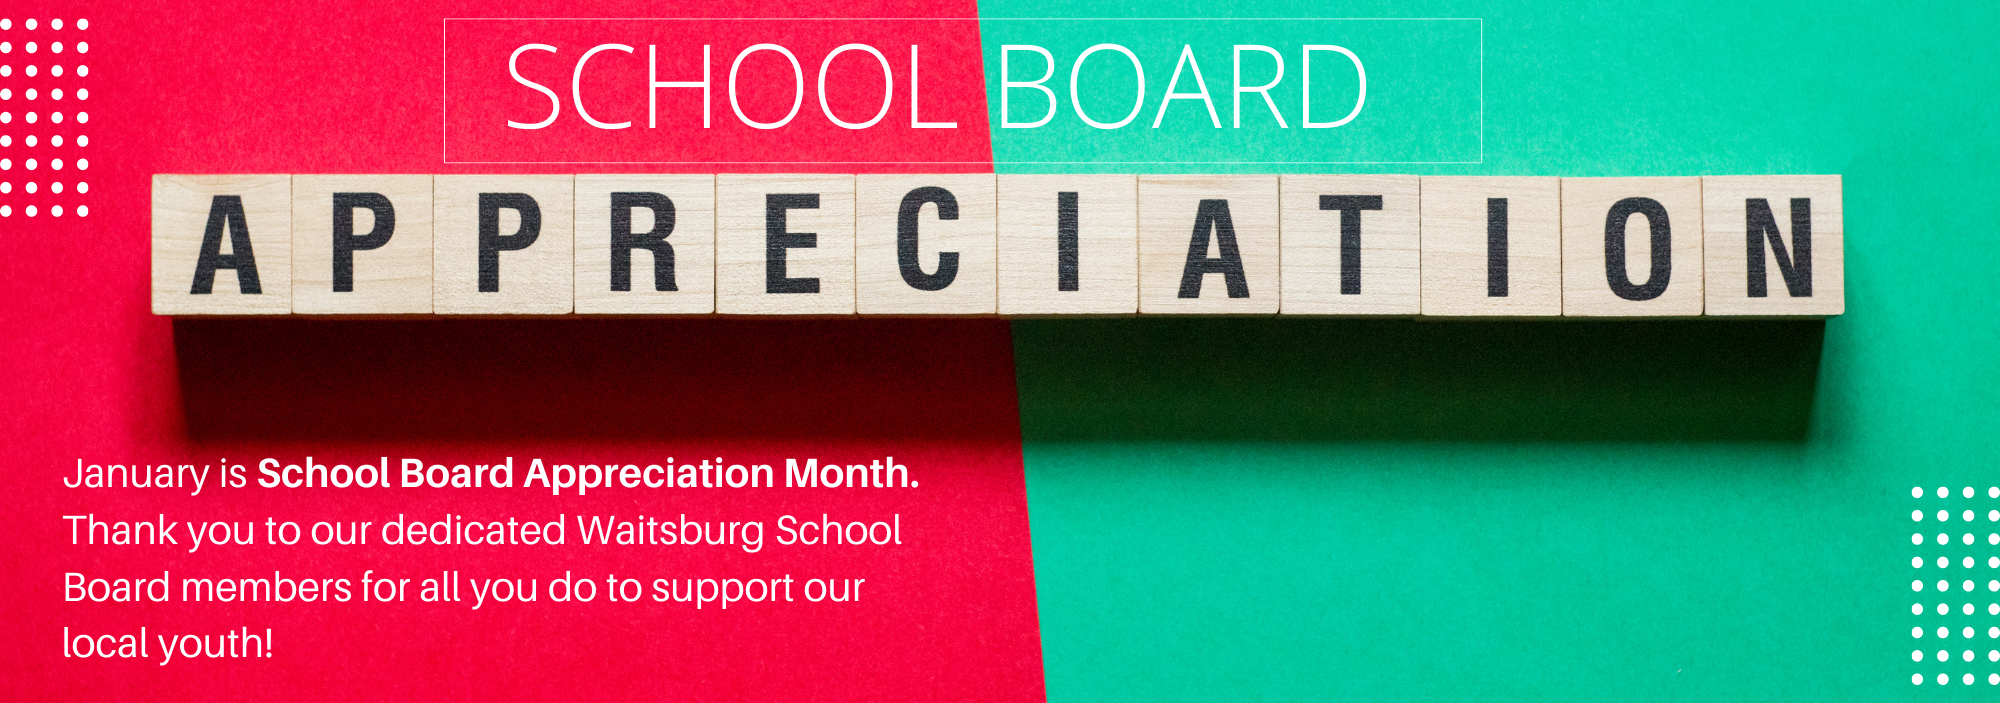 School board appreciation month. Thank you Waitsburg school board!